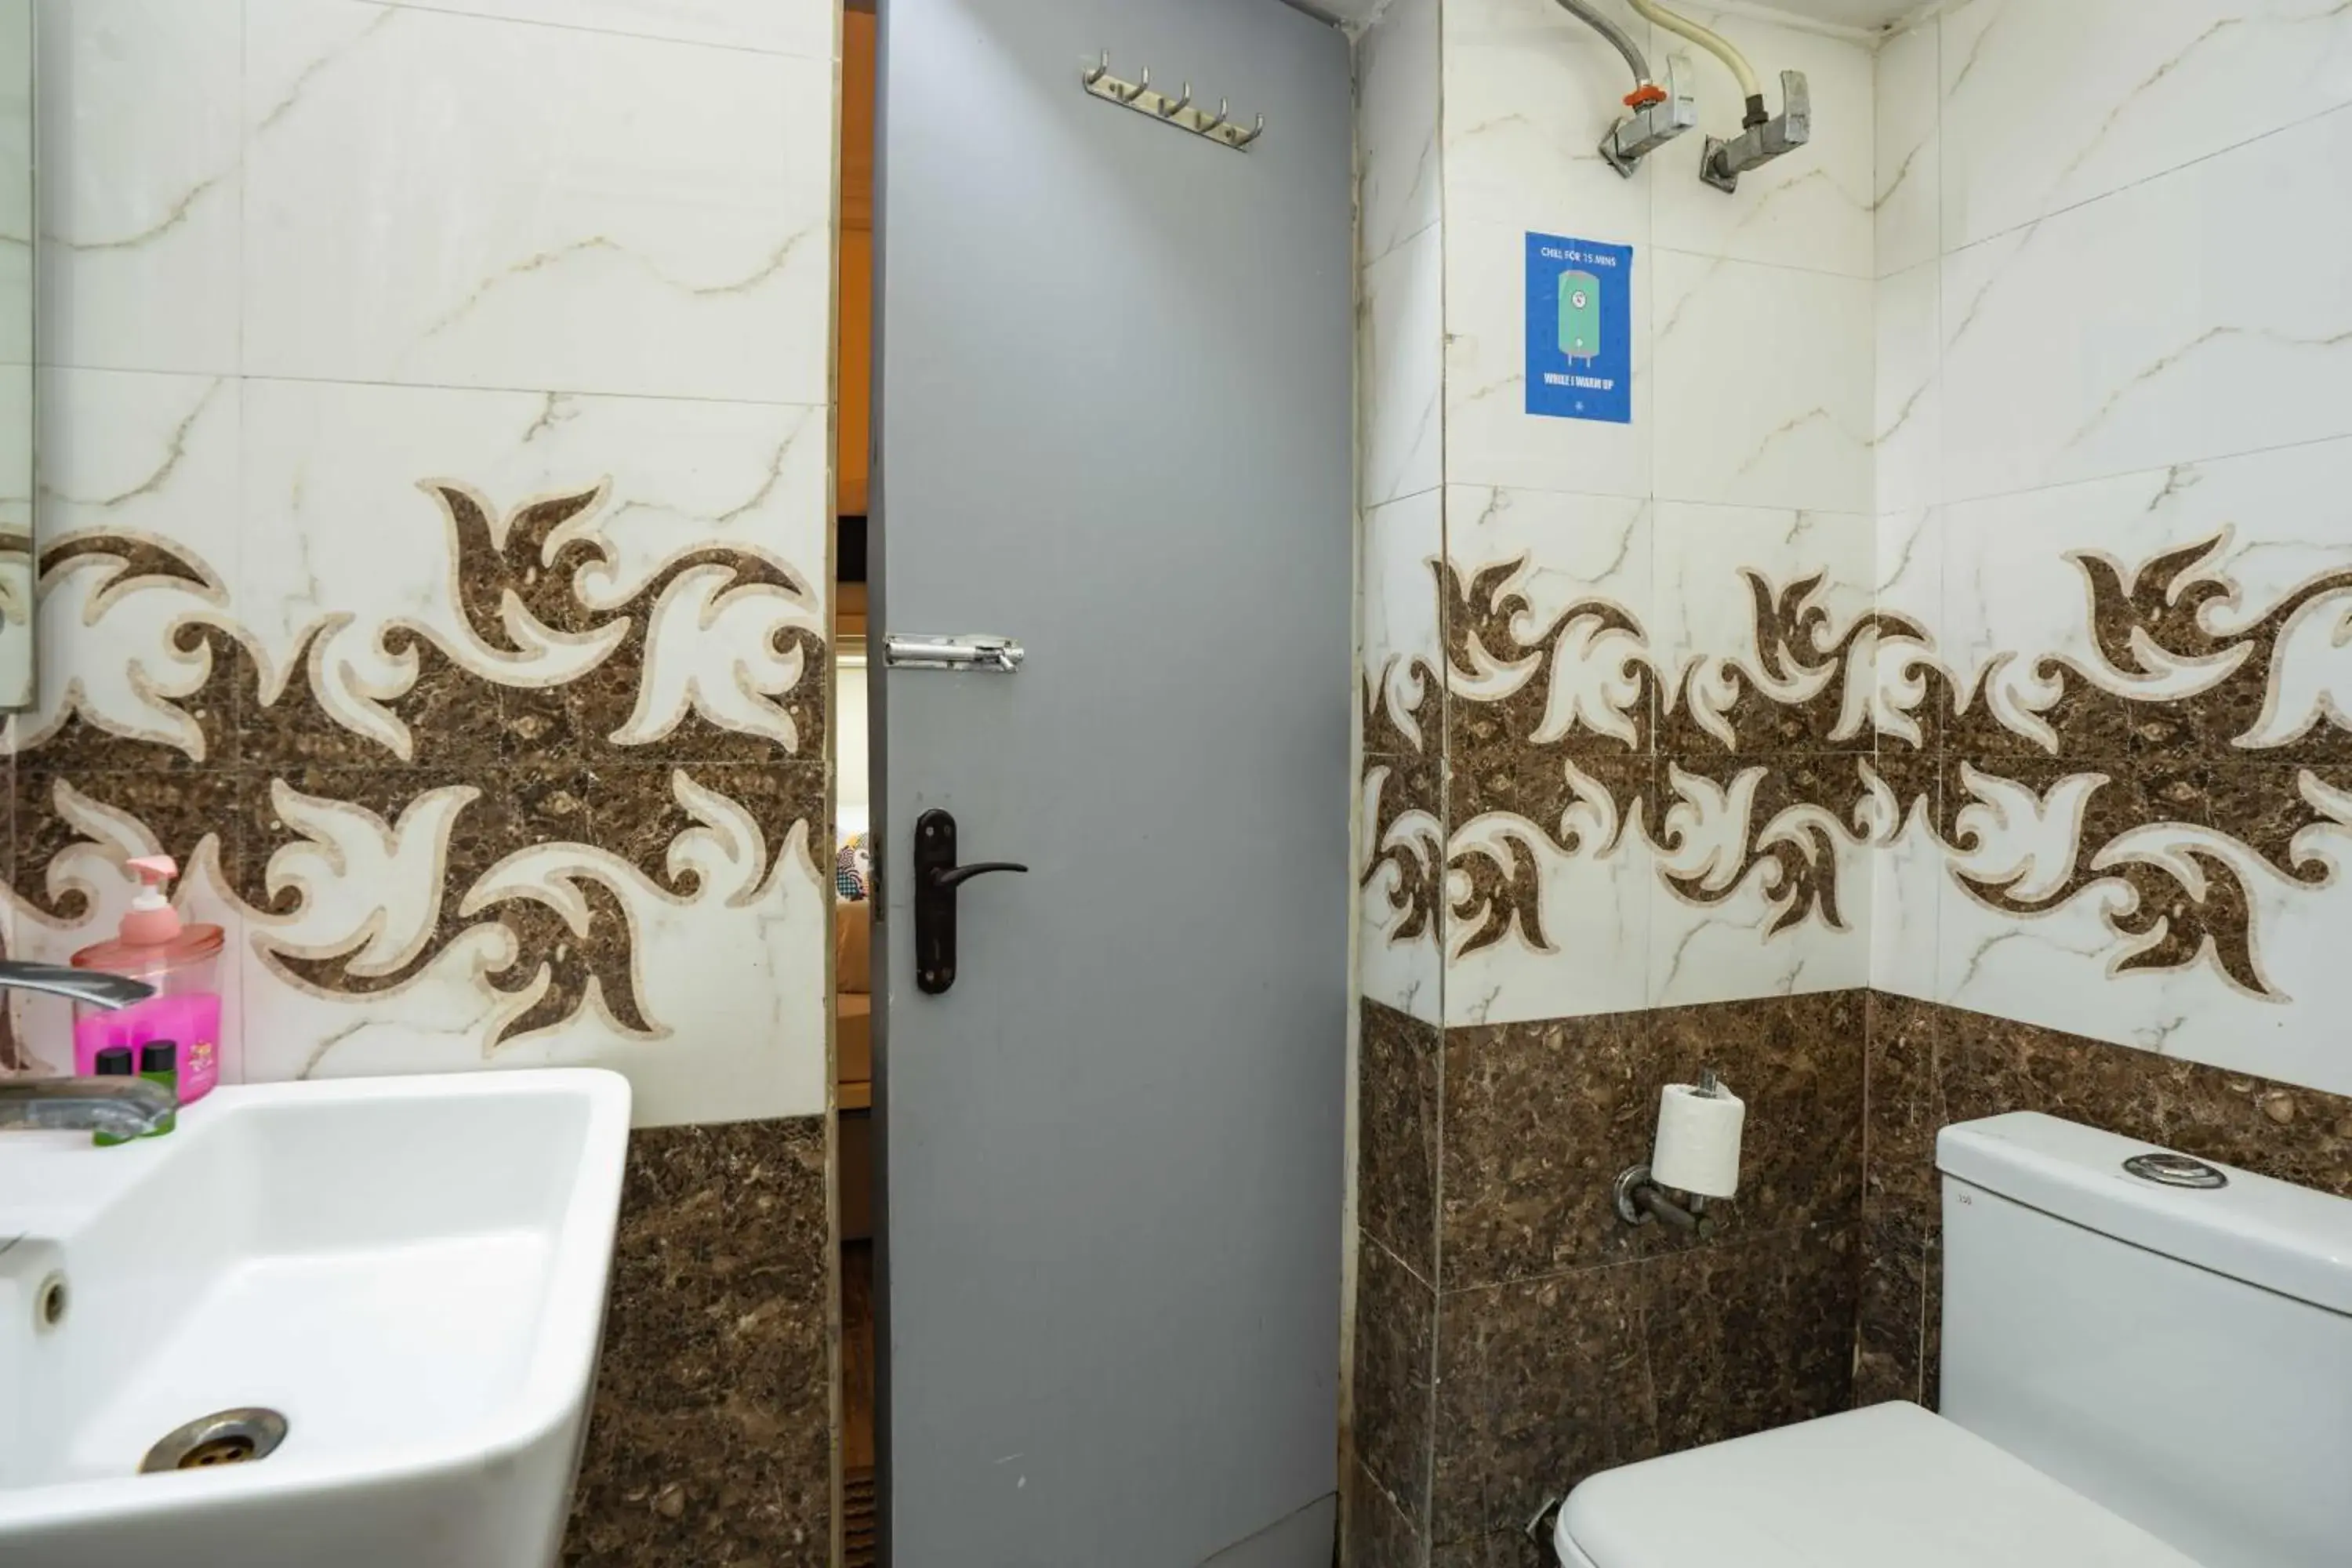 Shower, Bathroom in Zostel Delhi Hostel